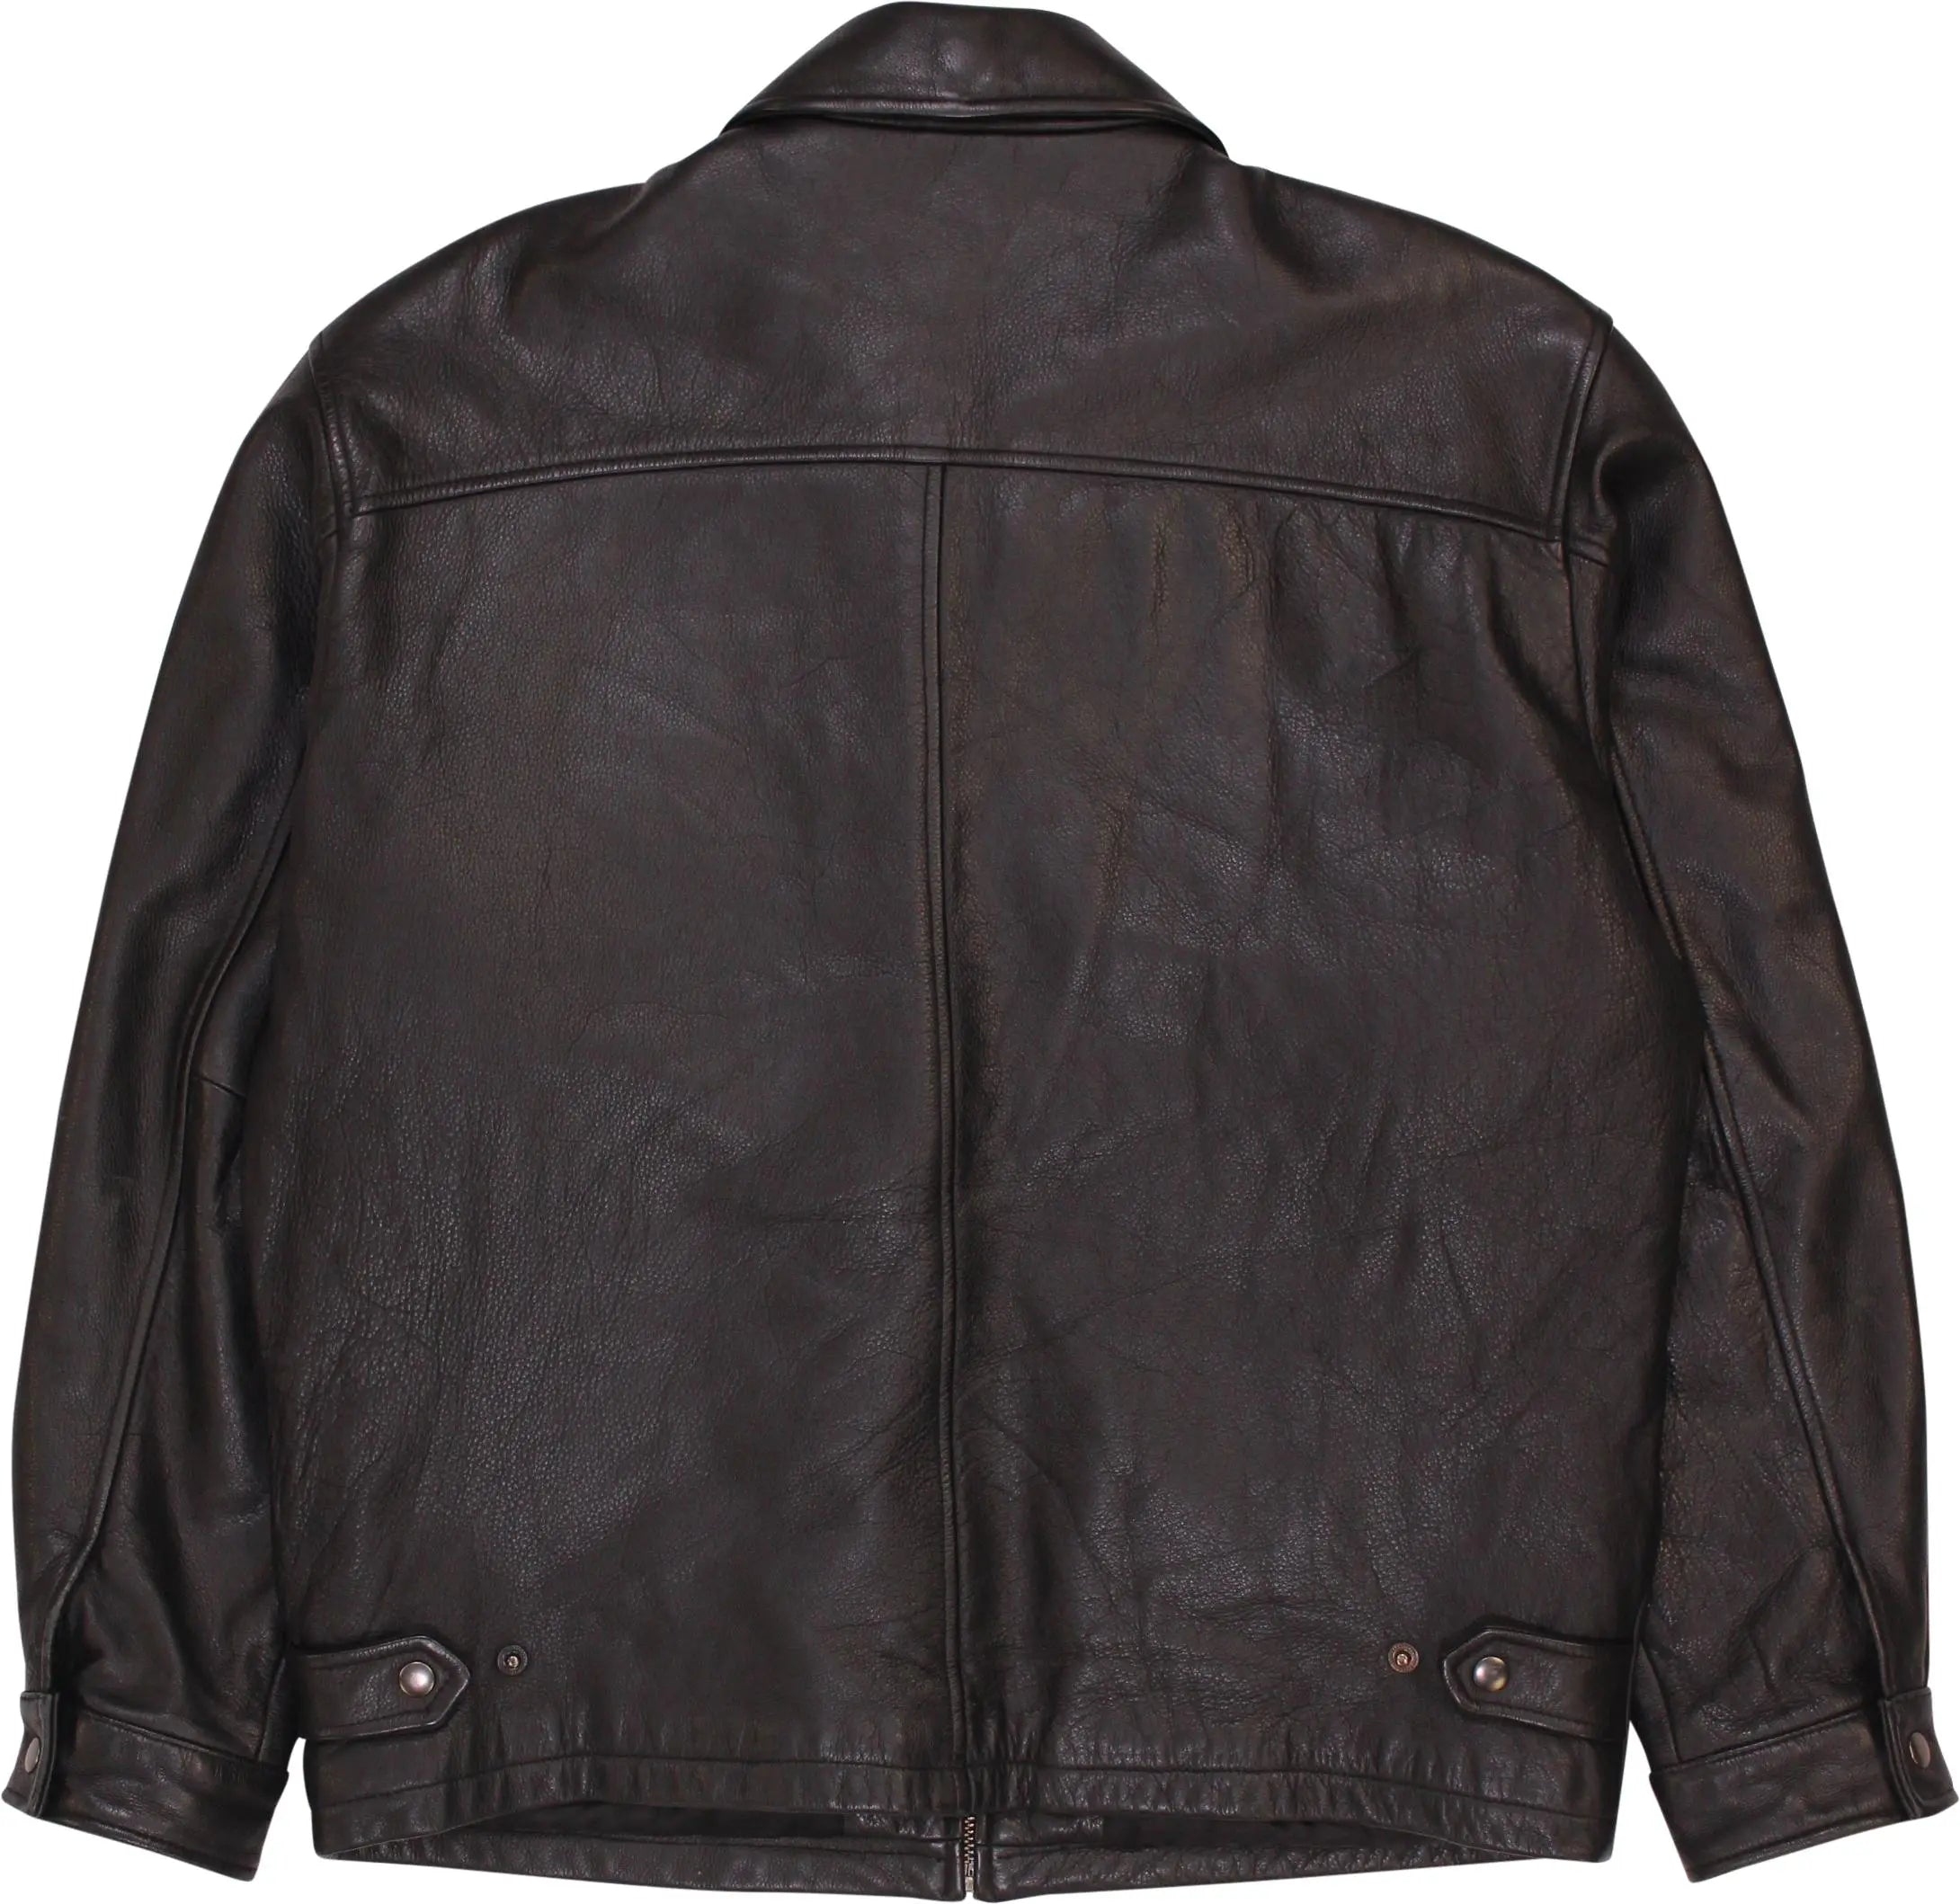 L.O.G.G. - Vintage Black Leather Jacket- ThriftTale.com - Vintage and second handclothing